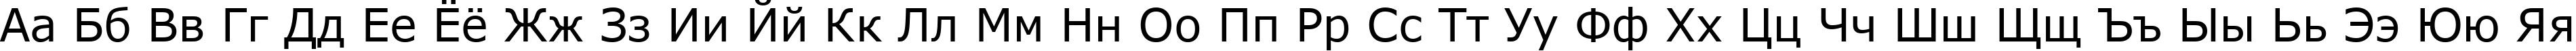 Пример написания русского алфавита шрифтом font228